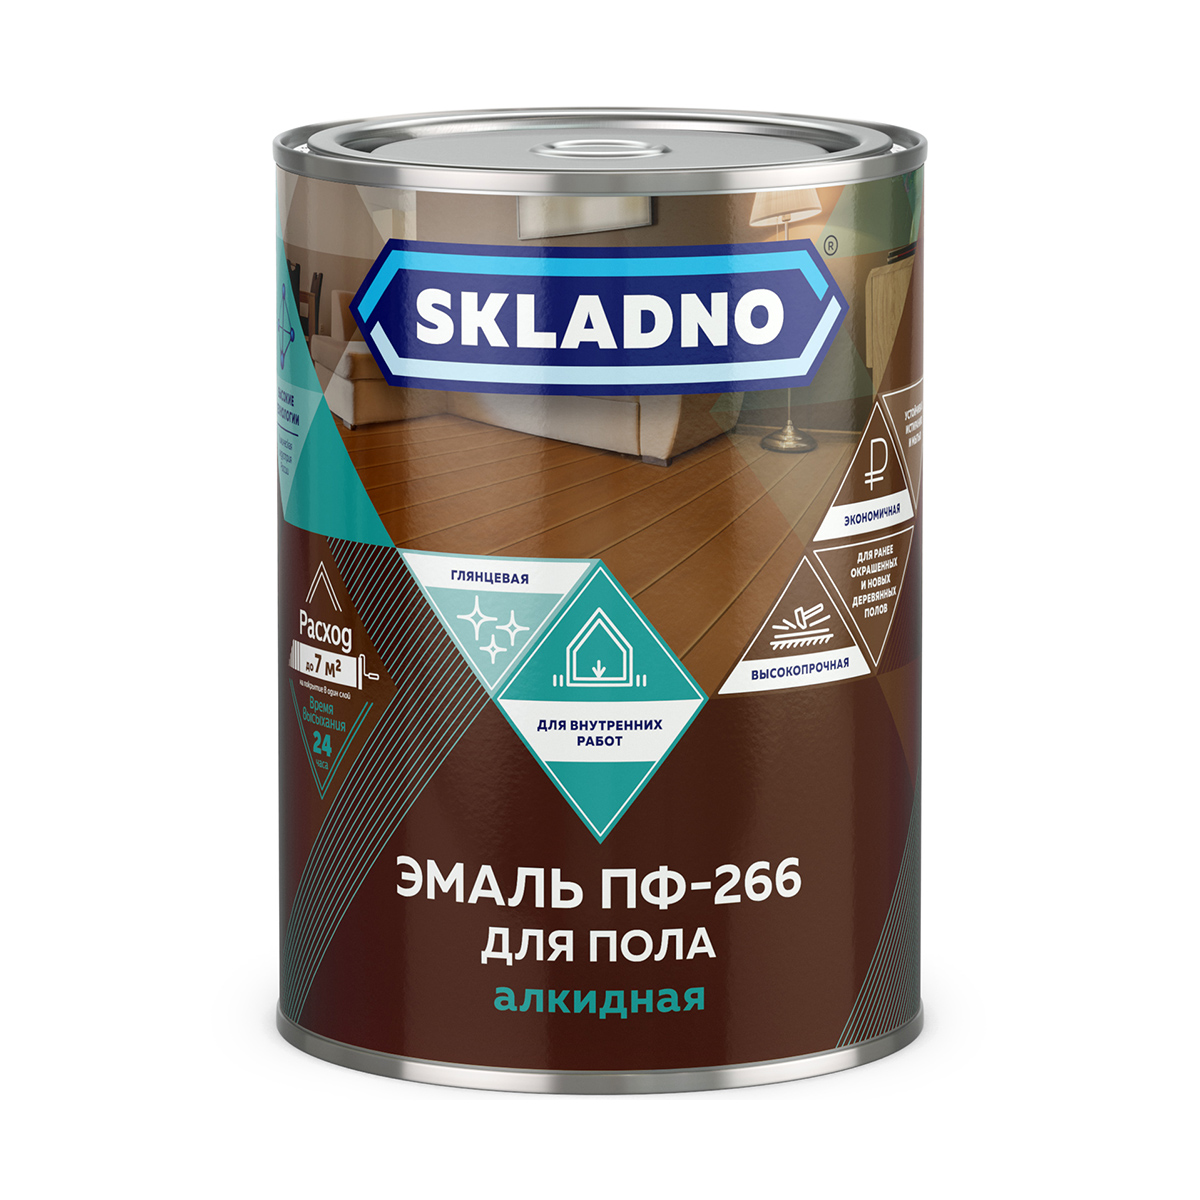 Эмаль ПФ-266 для пола Skladno, алкидная, глянцевая, 2,6 кг, желто-коричневая osso пеленка для собак многоразовая впитывающая коричневая 40 60 см